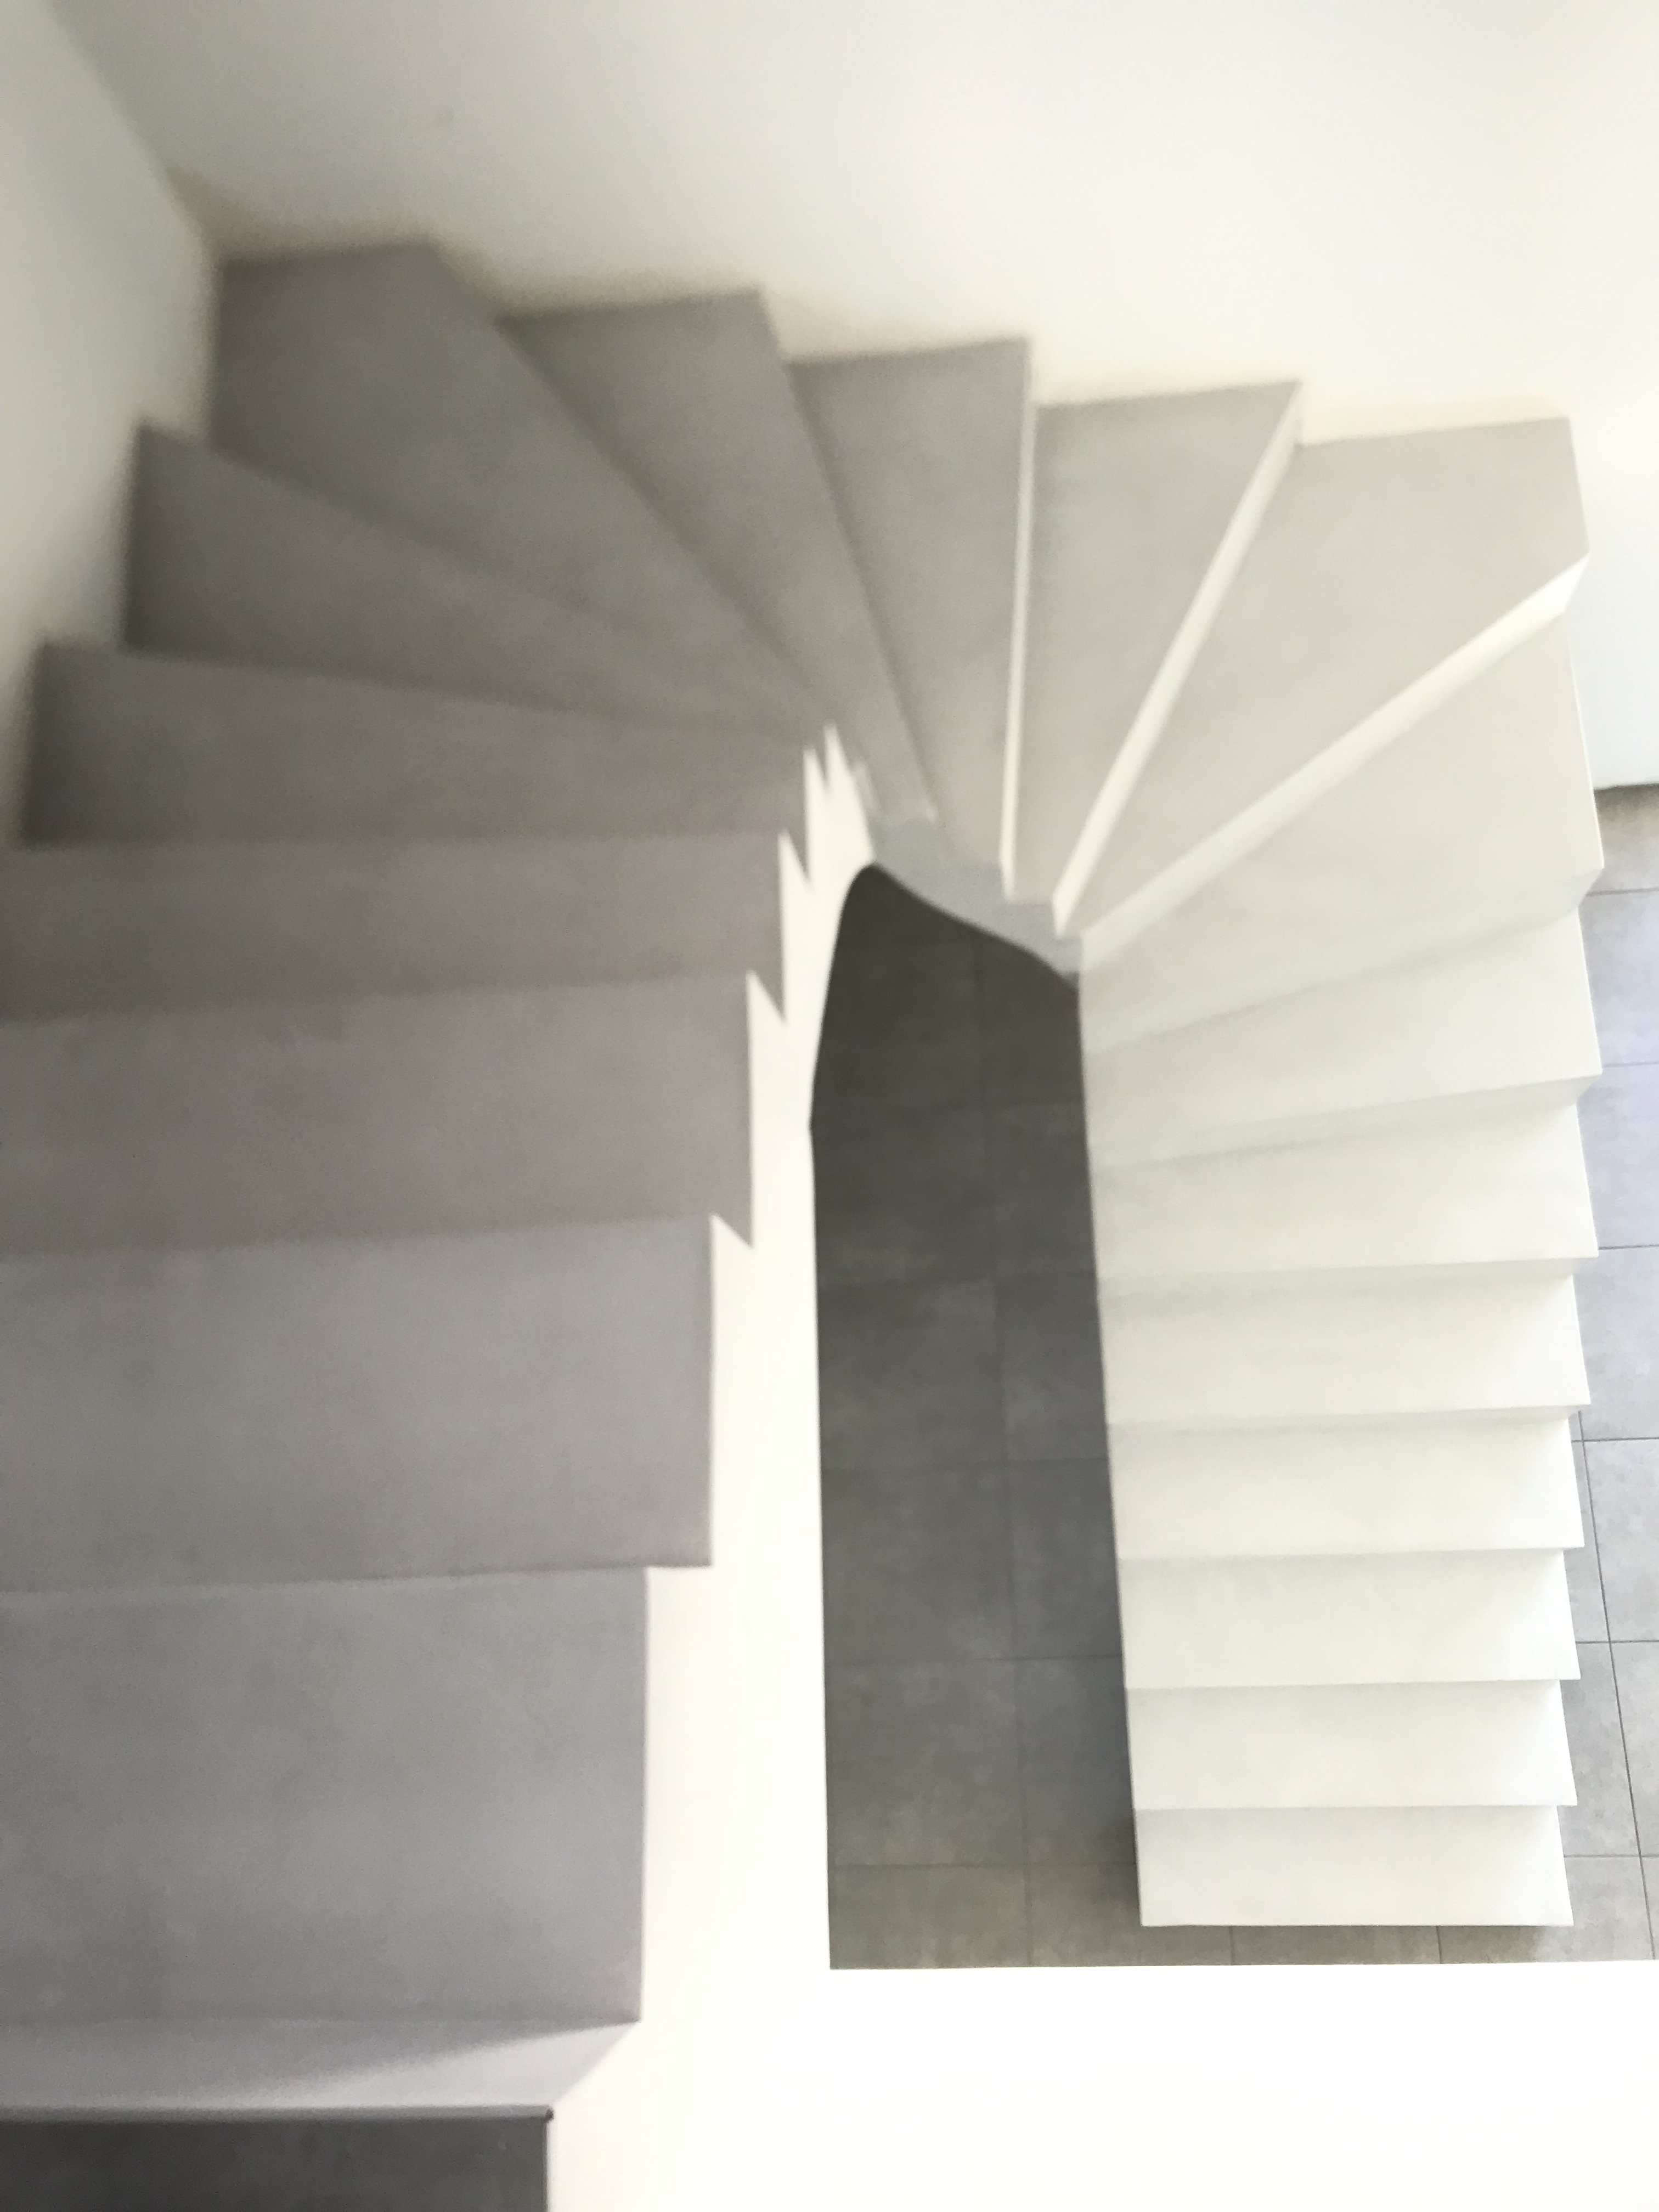 remarquable escalier à paillasse deux quart tournant en béton ciré couleur gris cendré à andernos-les-bains pour un particulier